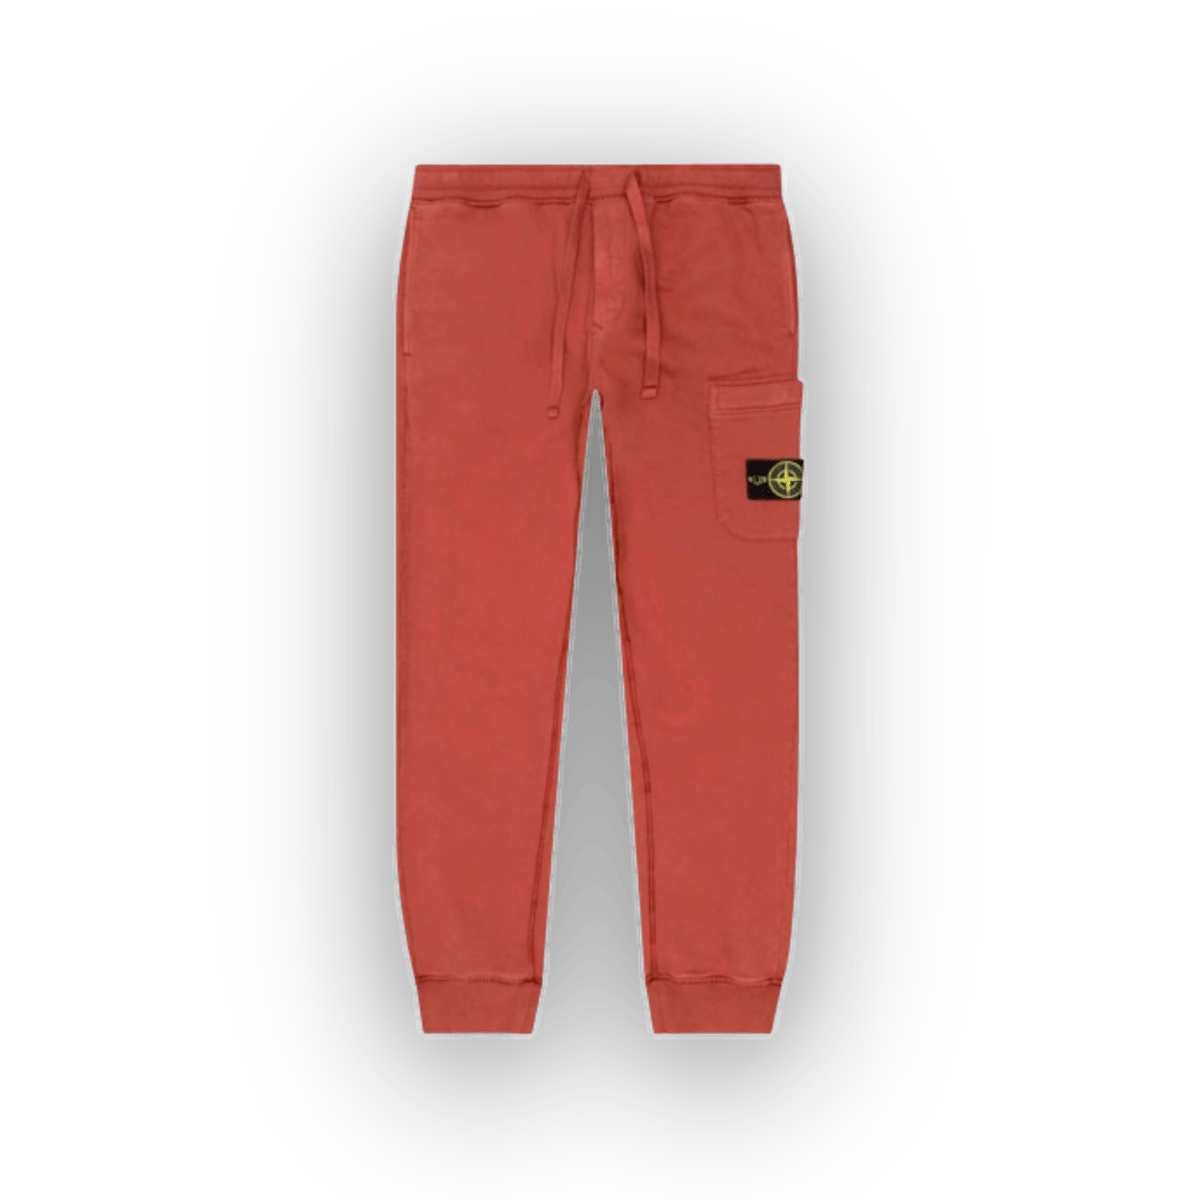 Stone Island Fleece Pants 'Brick Red' - Sweatpants - Jawns on Fire Sneakers & Streetwear